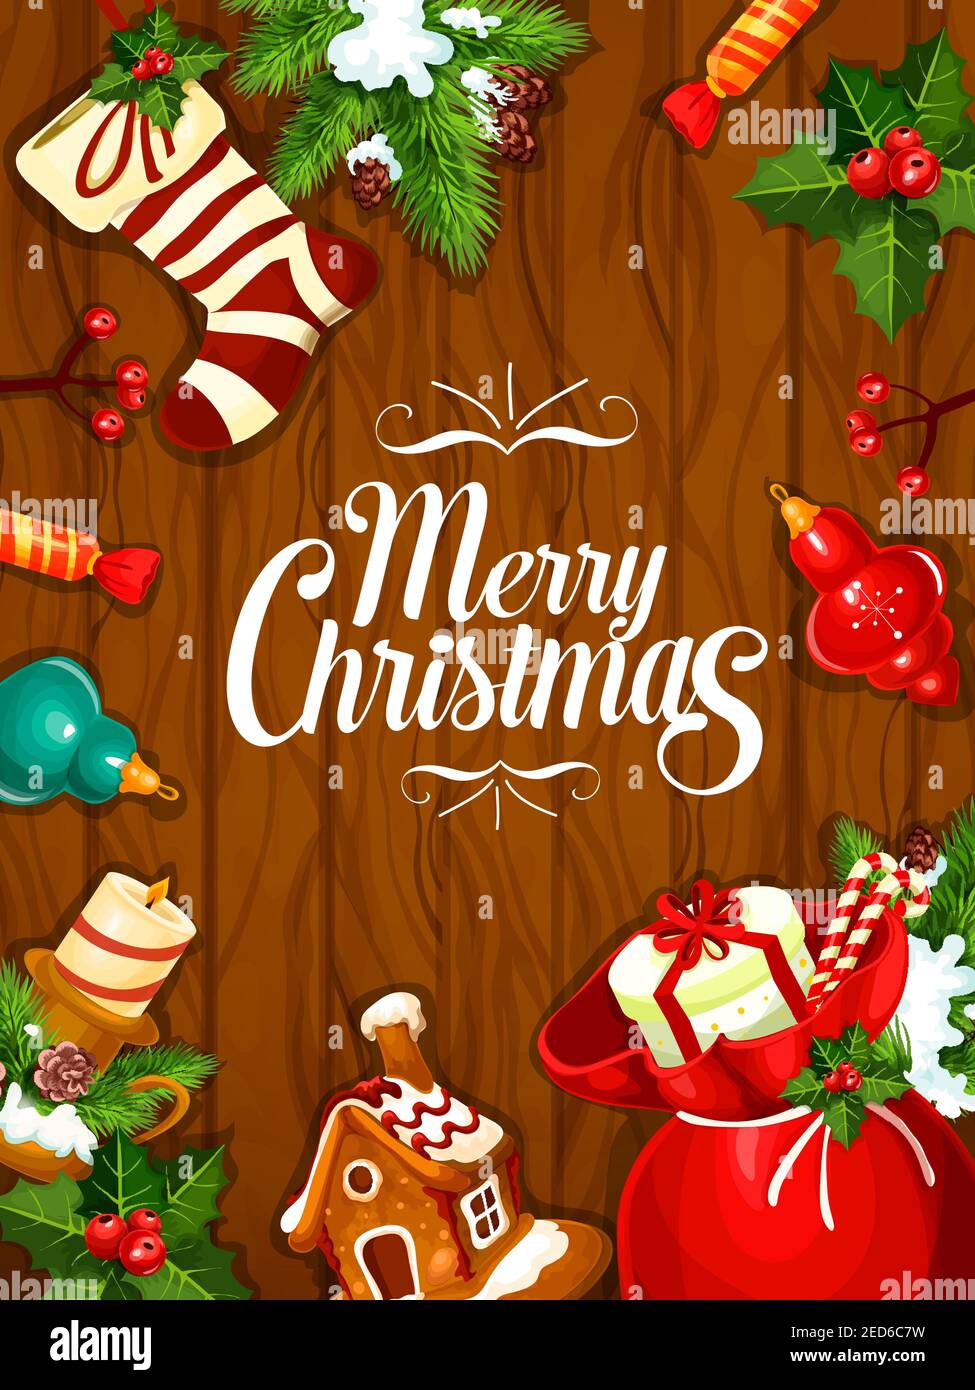 Buon Natale. Poster di saluto, scheda di ornamenti dell'albero di Natale, corona di agrifoglio, casa di pan di zenzero, borsa di regali, candela, calza di natale, recinzione Illustrazione Vettoriale